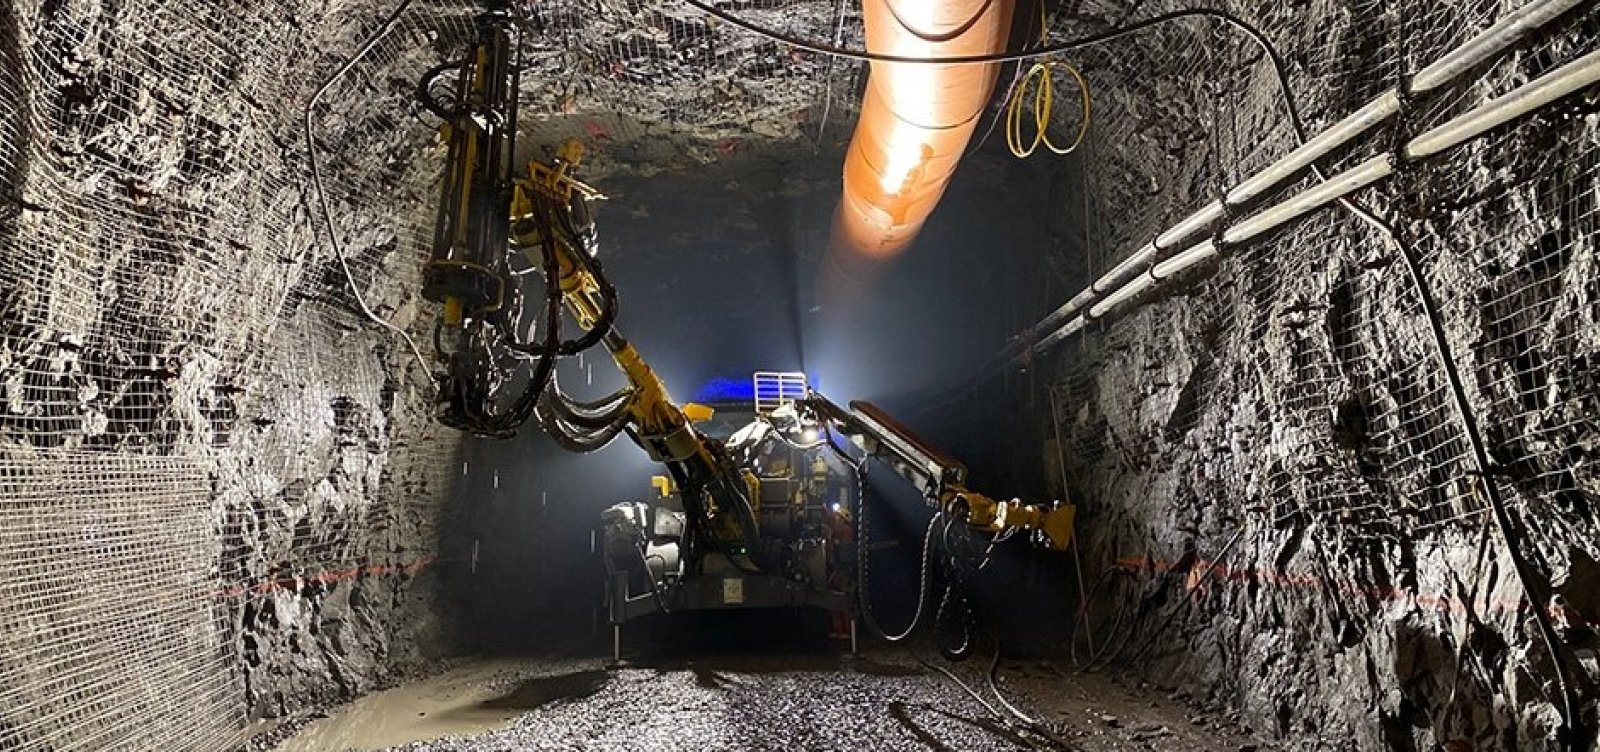 Vale tenta resgatar 39 trabalhadores presos em mina no Canadá